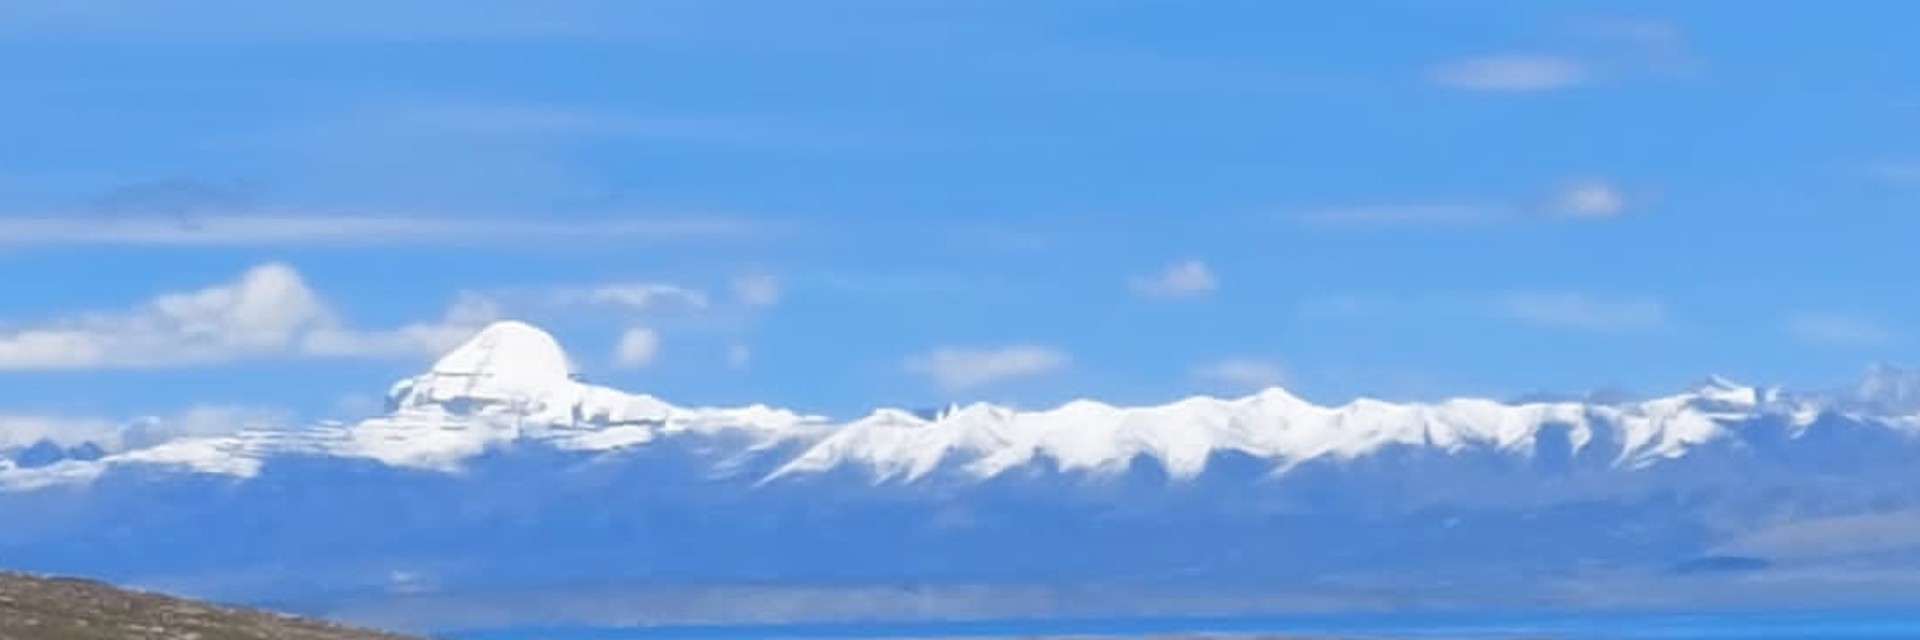 Mount Kailash Aerial Darshan Mountain Flight